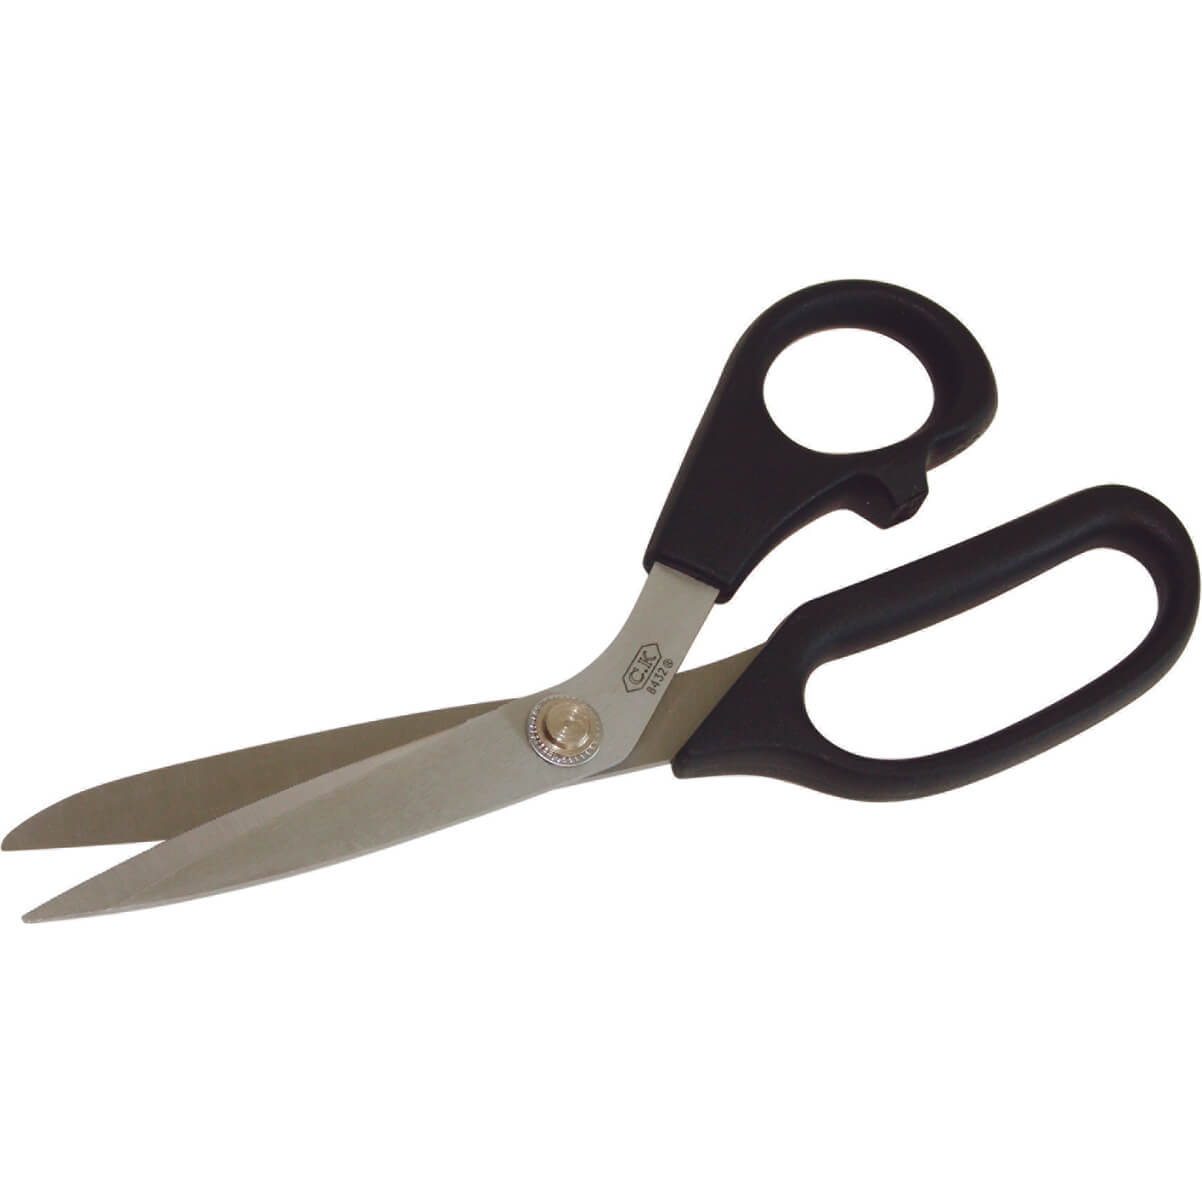 Image of CK Trimming Scissors 215mm